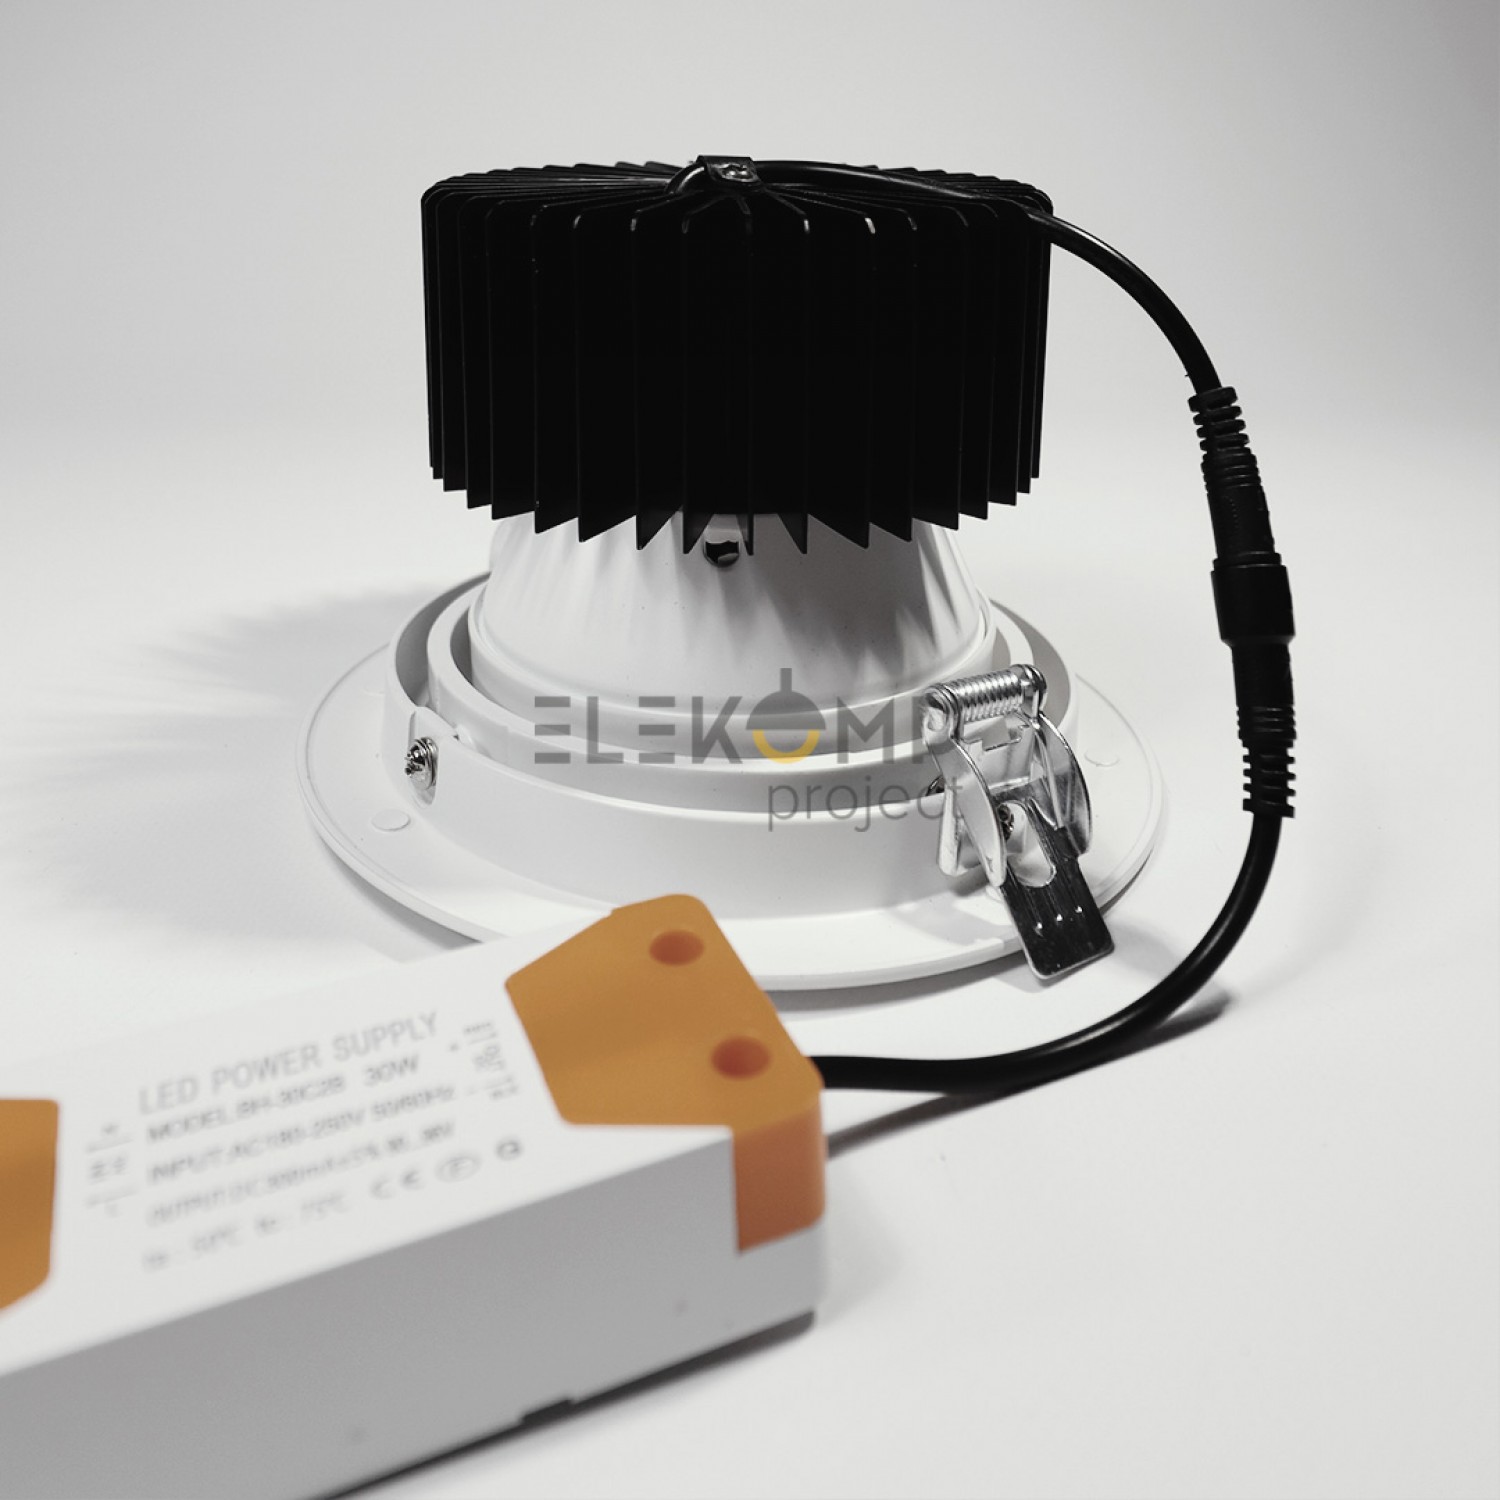 Точковий світильник Elekomp Pro Commercial Downlight Premium 30w R 139366